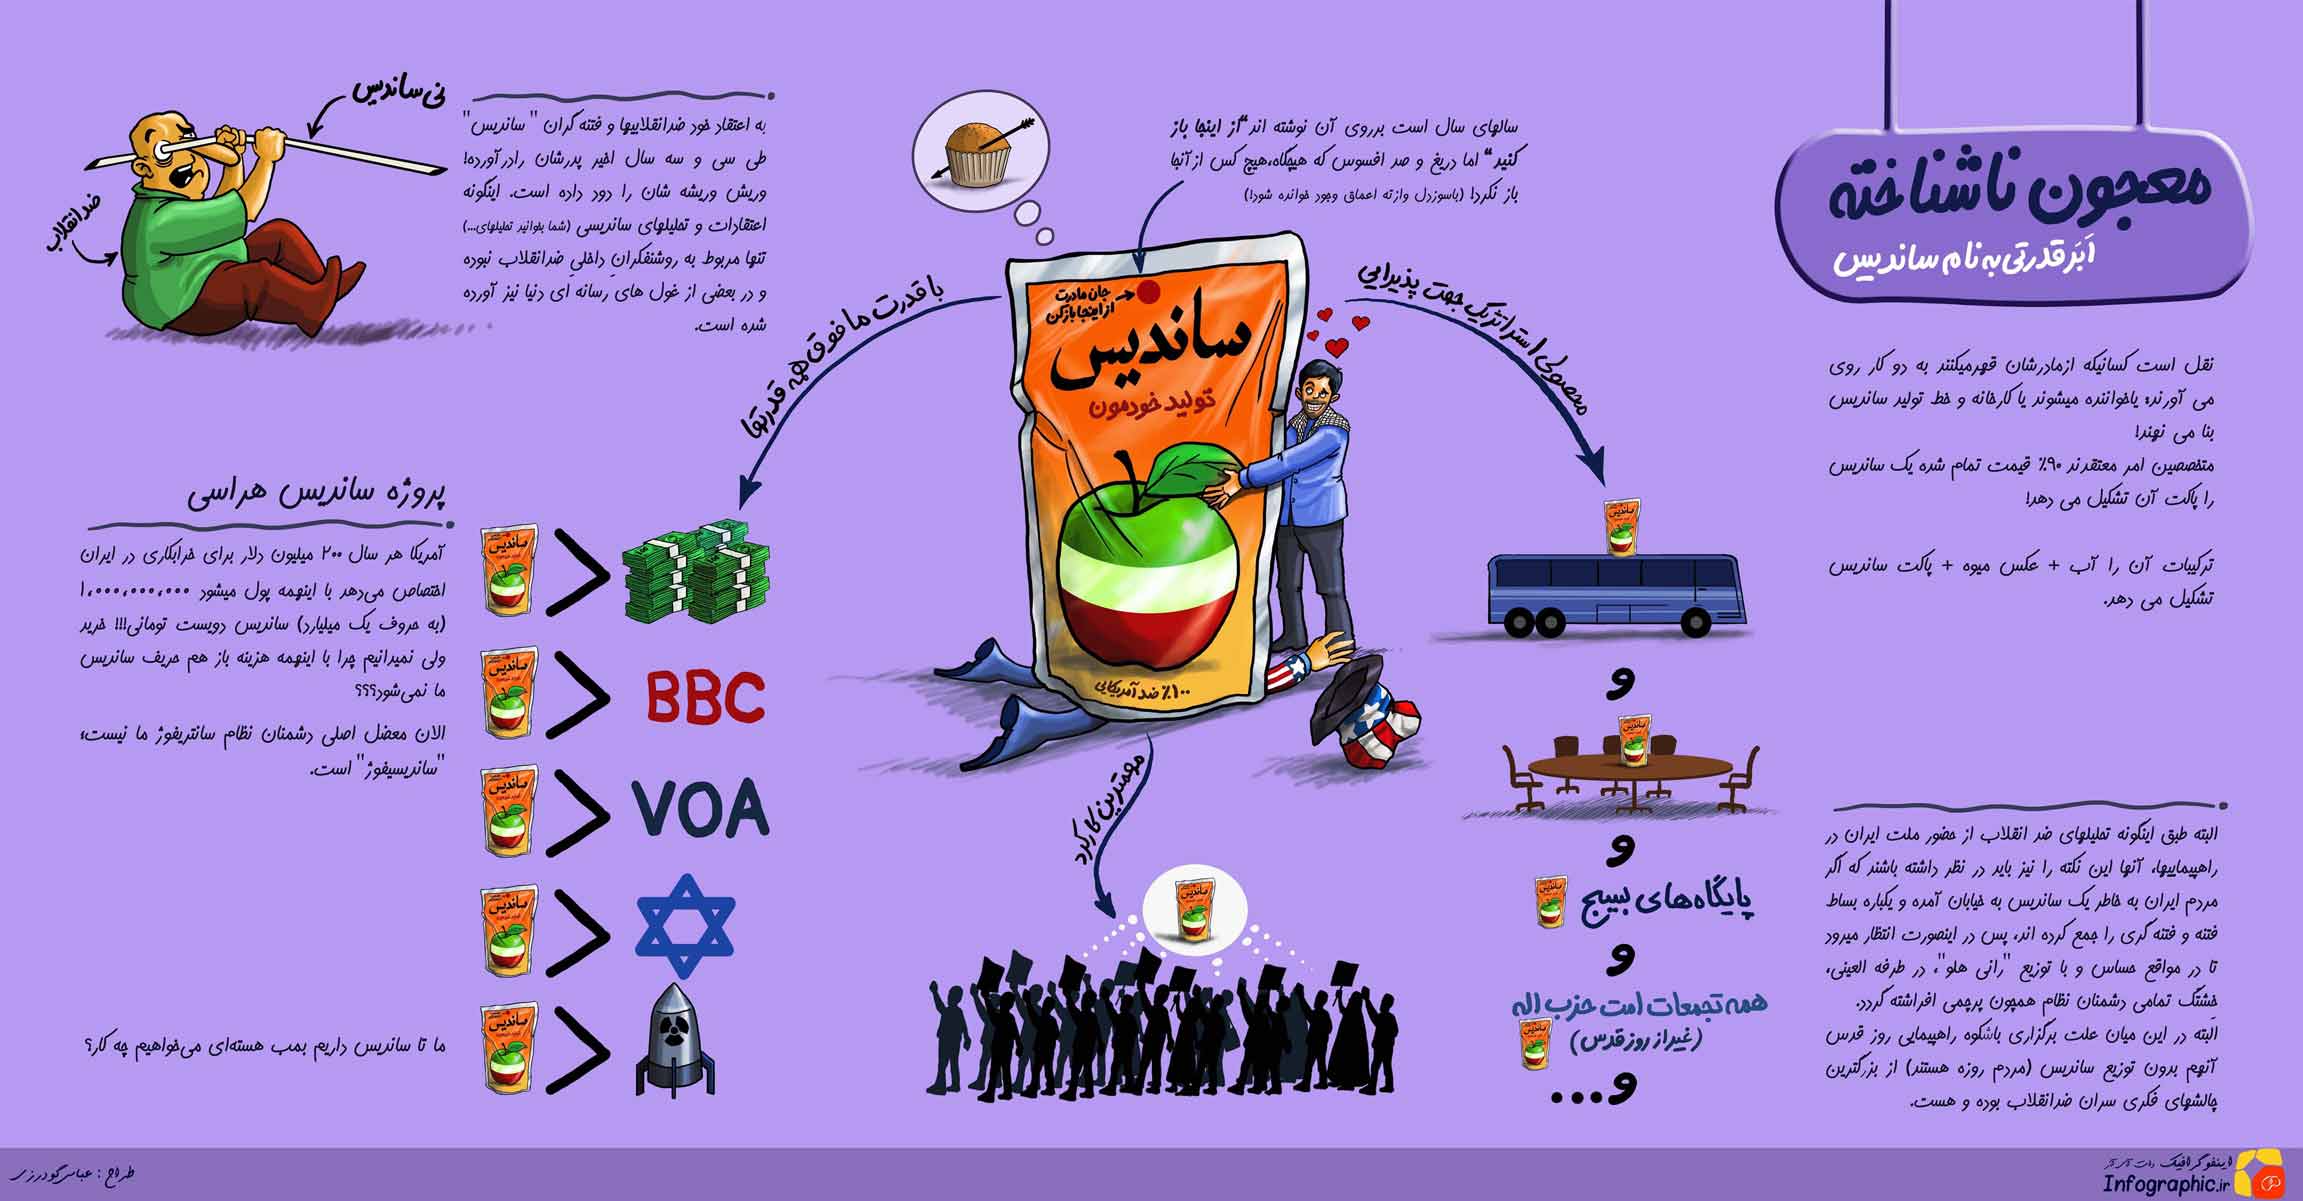 ساندیس,ضد آمریکایی,ابر قدرت,دانلود پوستر,عکس پوستر,دشمنان نظام,مردم,راهپیمایی,روز قدس,حزب الله,ساندیس هراسی,غول های رسانه ای,فتنه گران